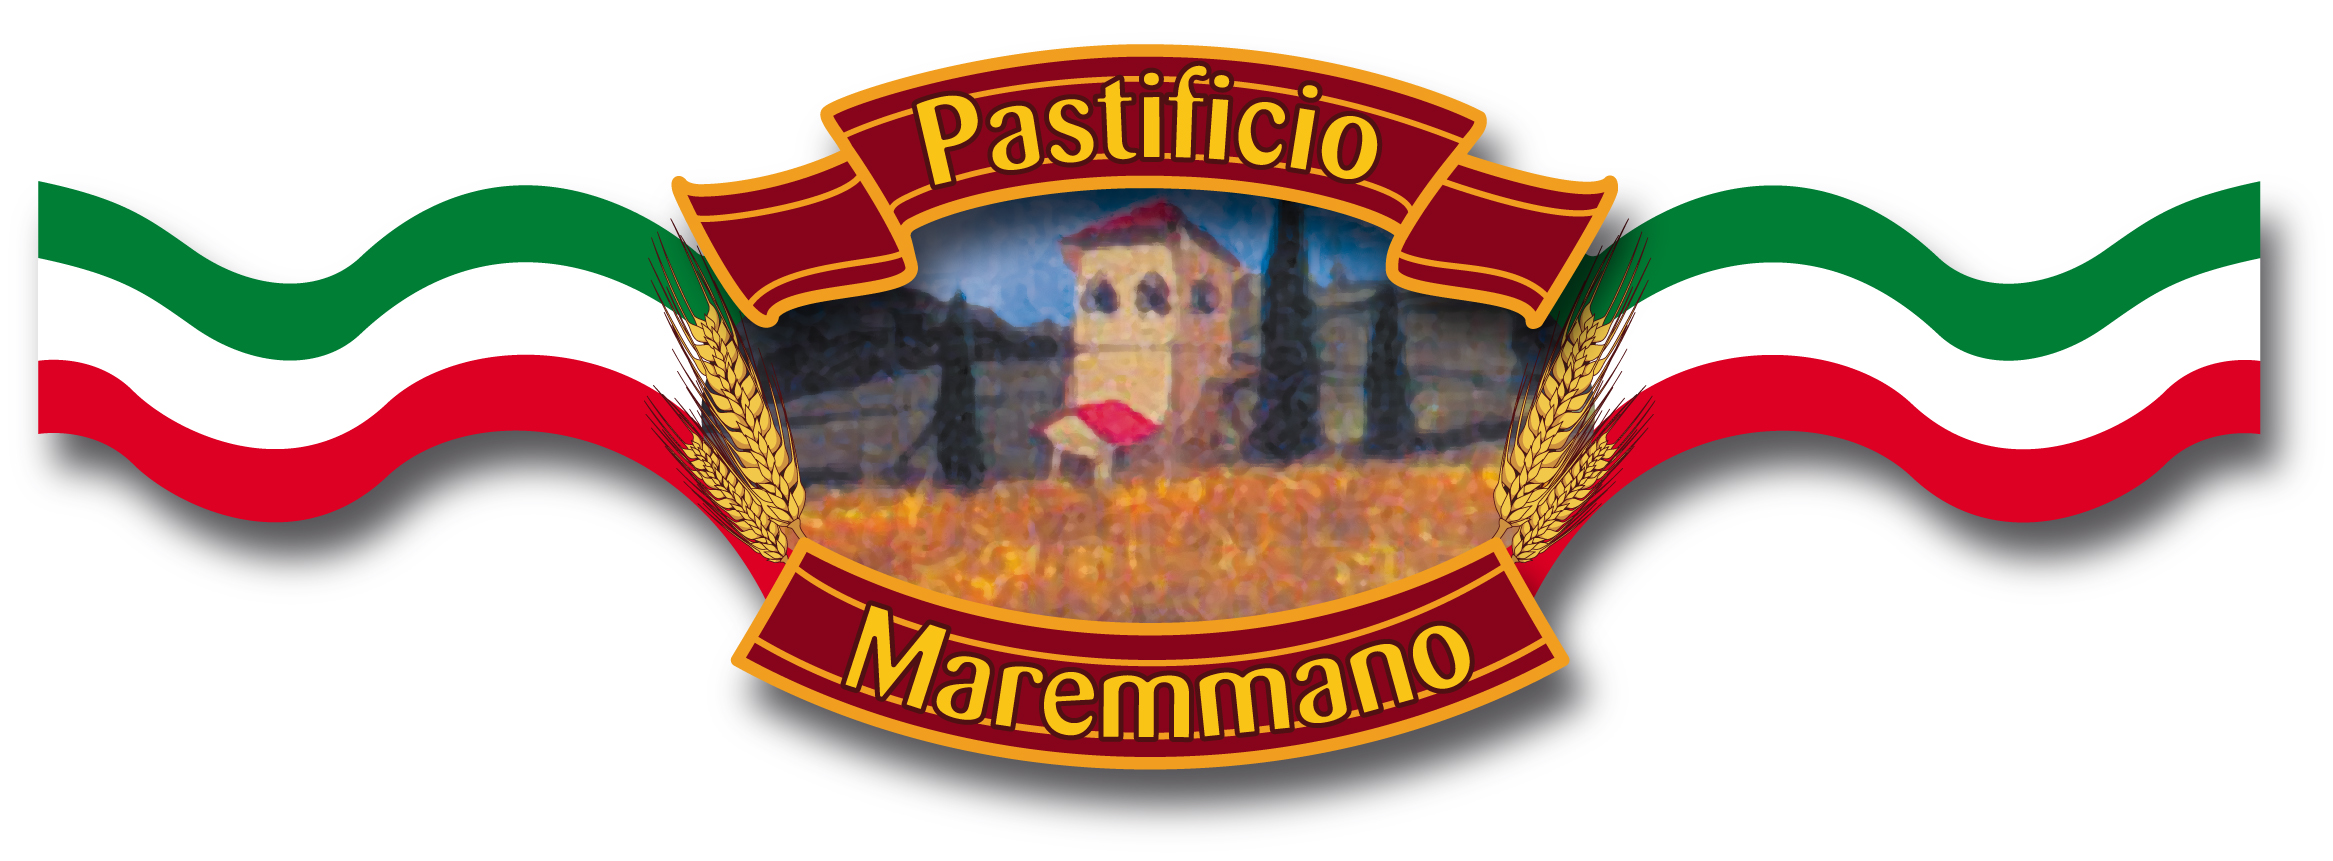 (c) Pastificiomaremmano.com